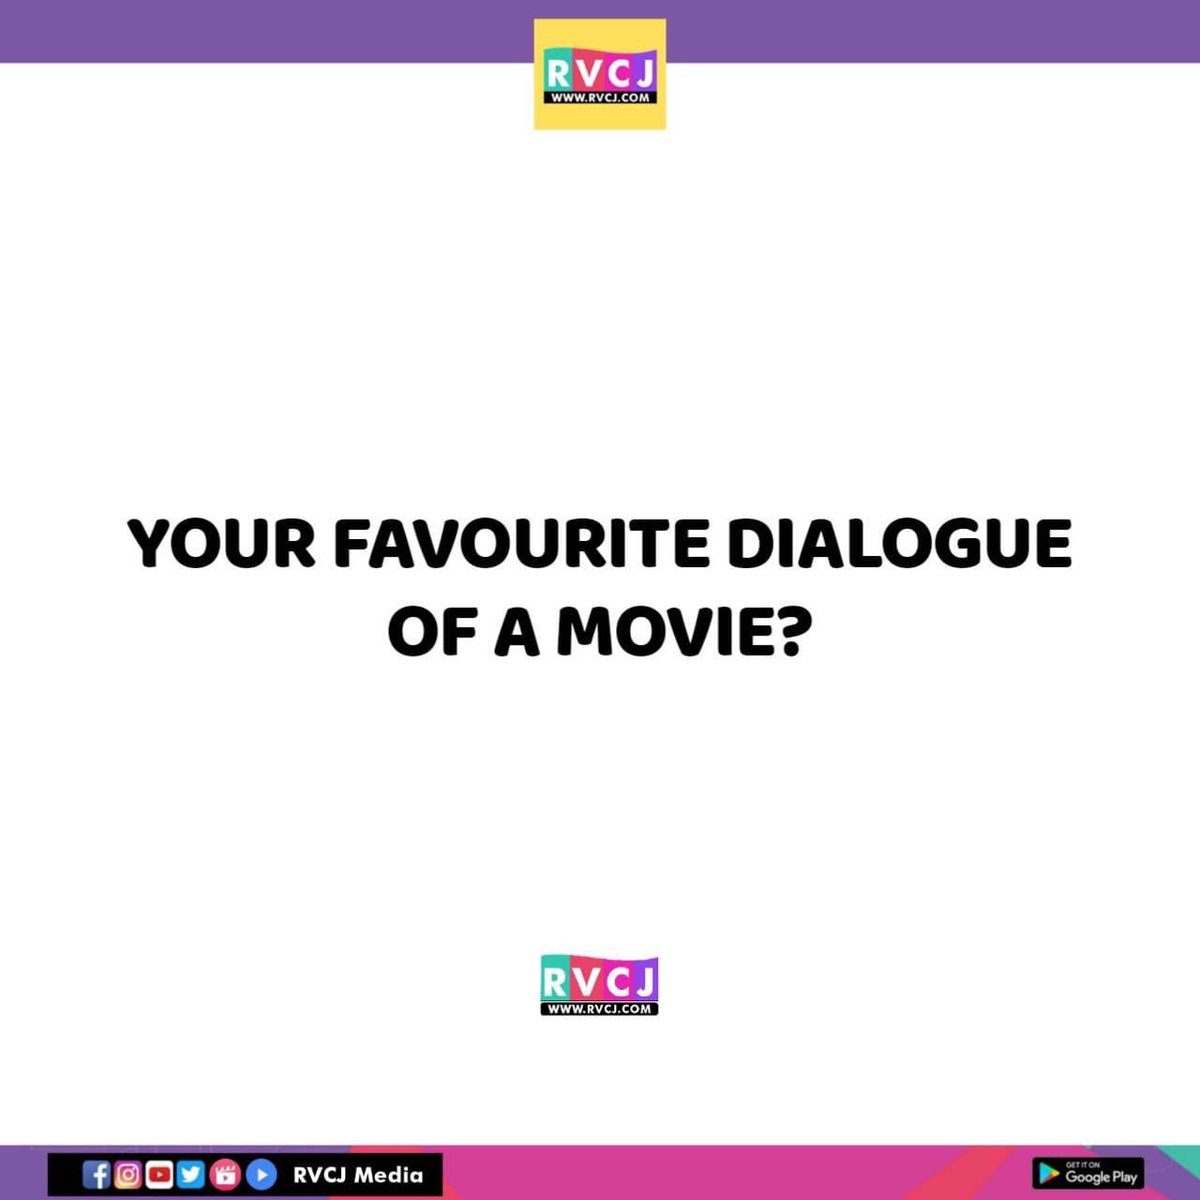 Fav dialogue?
#moviedialogue #dialogue #dialogues #moviequotes #rvcjmovies